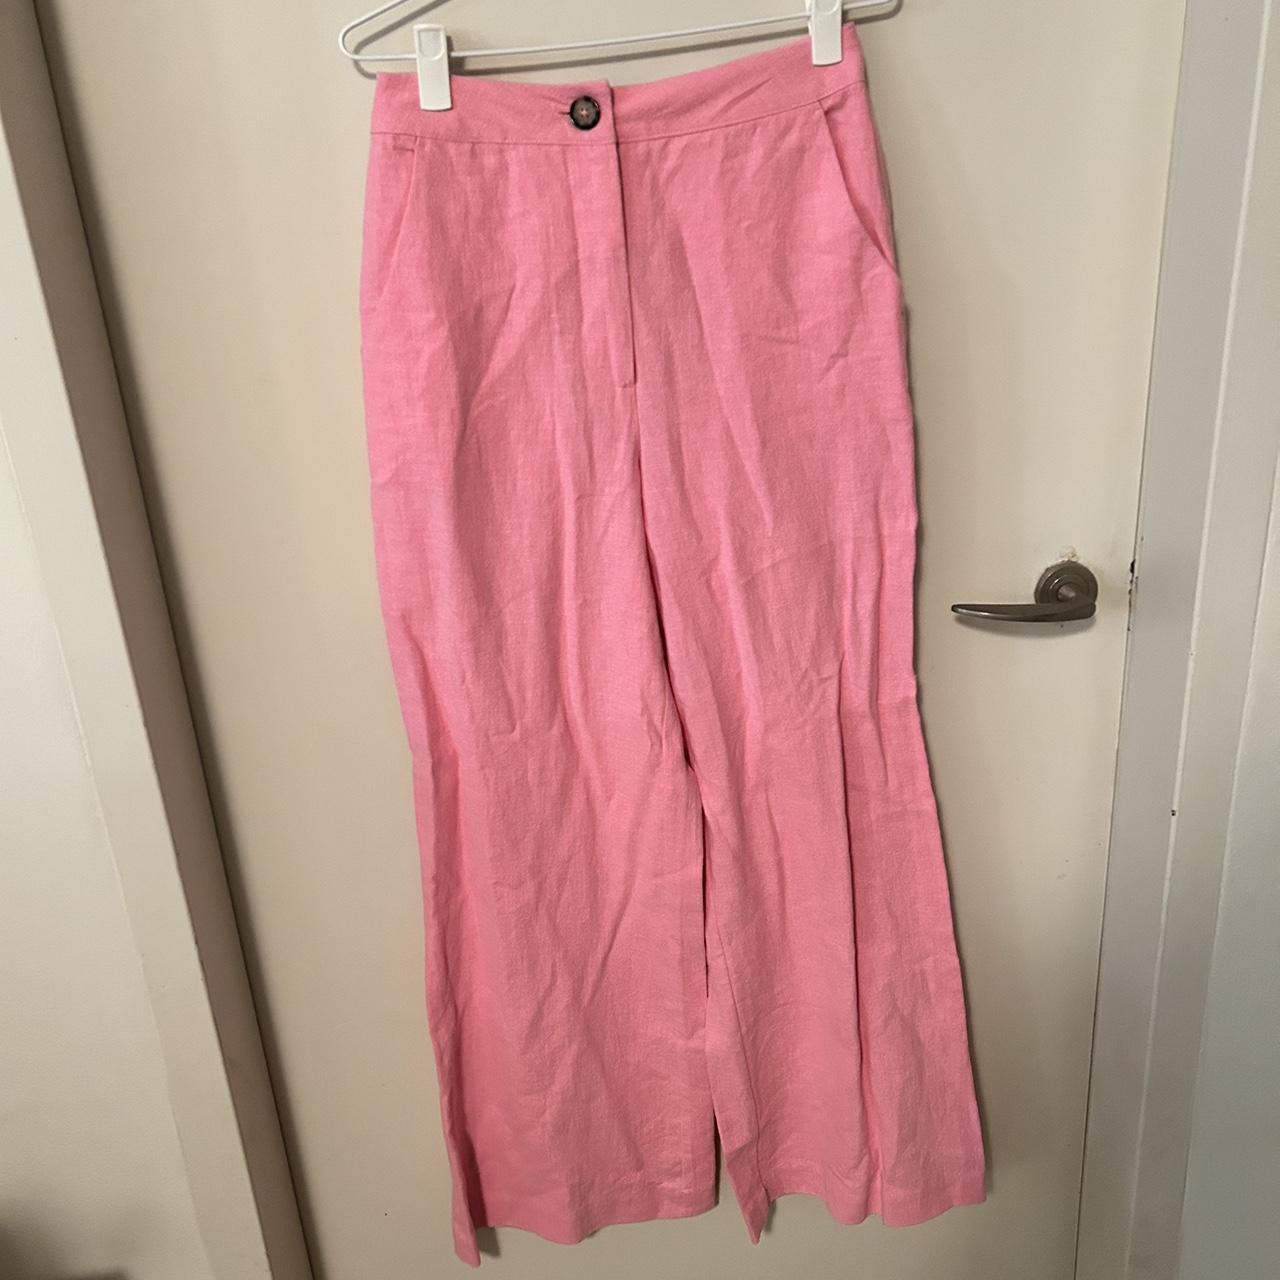 Pink high waisted linen pants - Depop